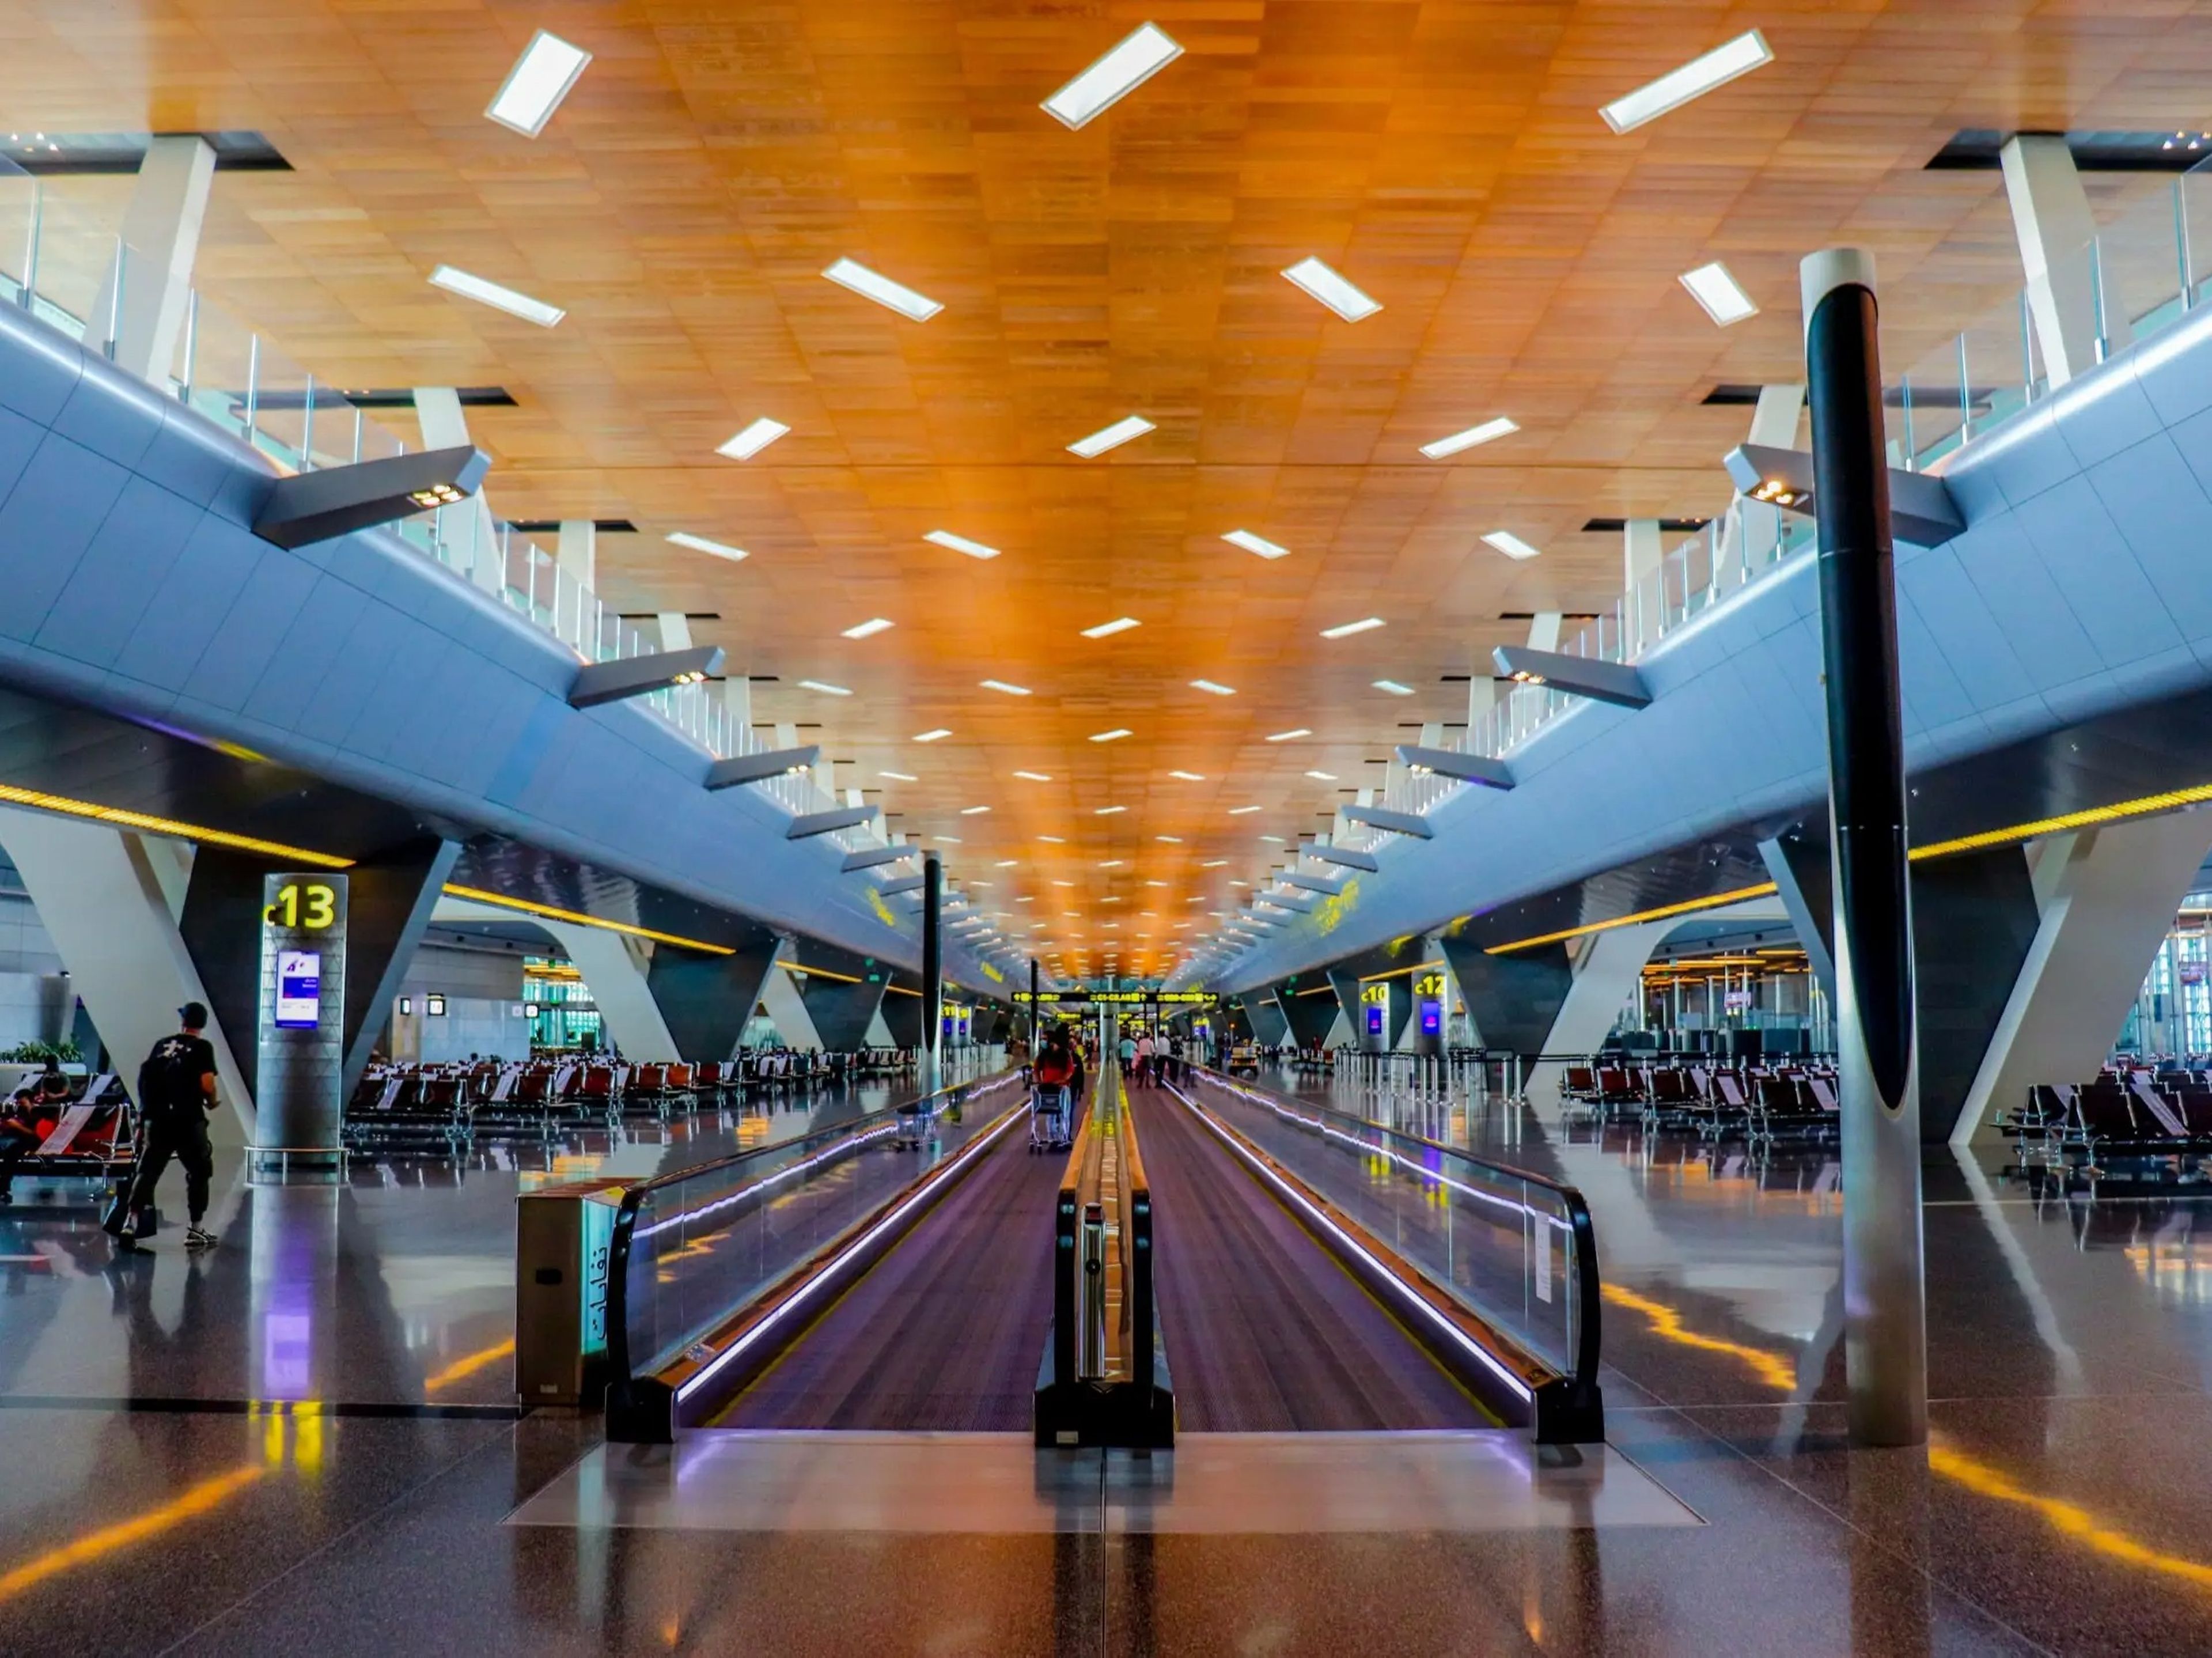 Aeropuerto Internacional Hamad, Doha, Qatar.